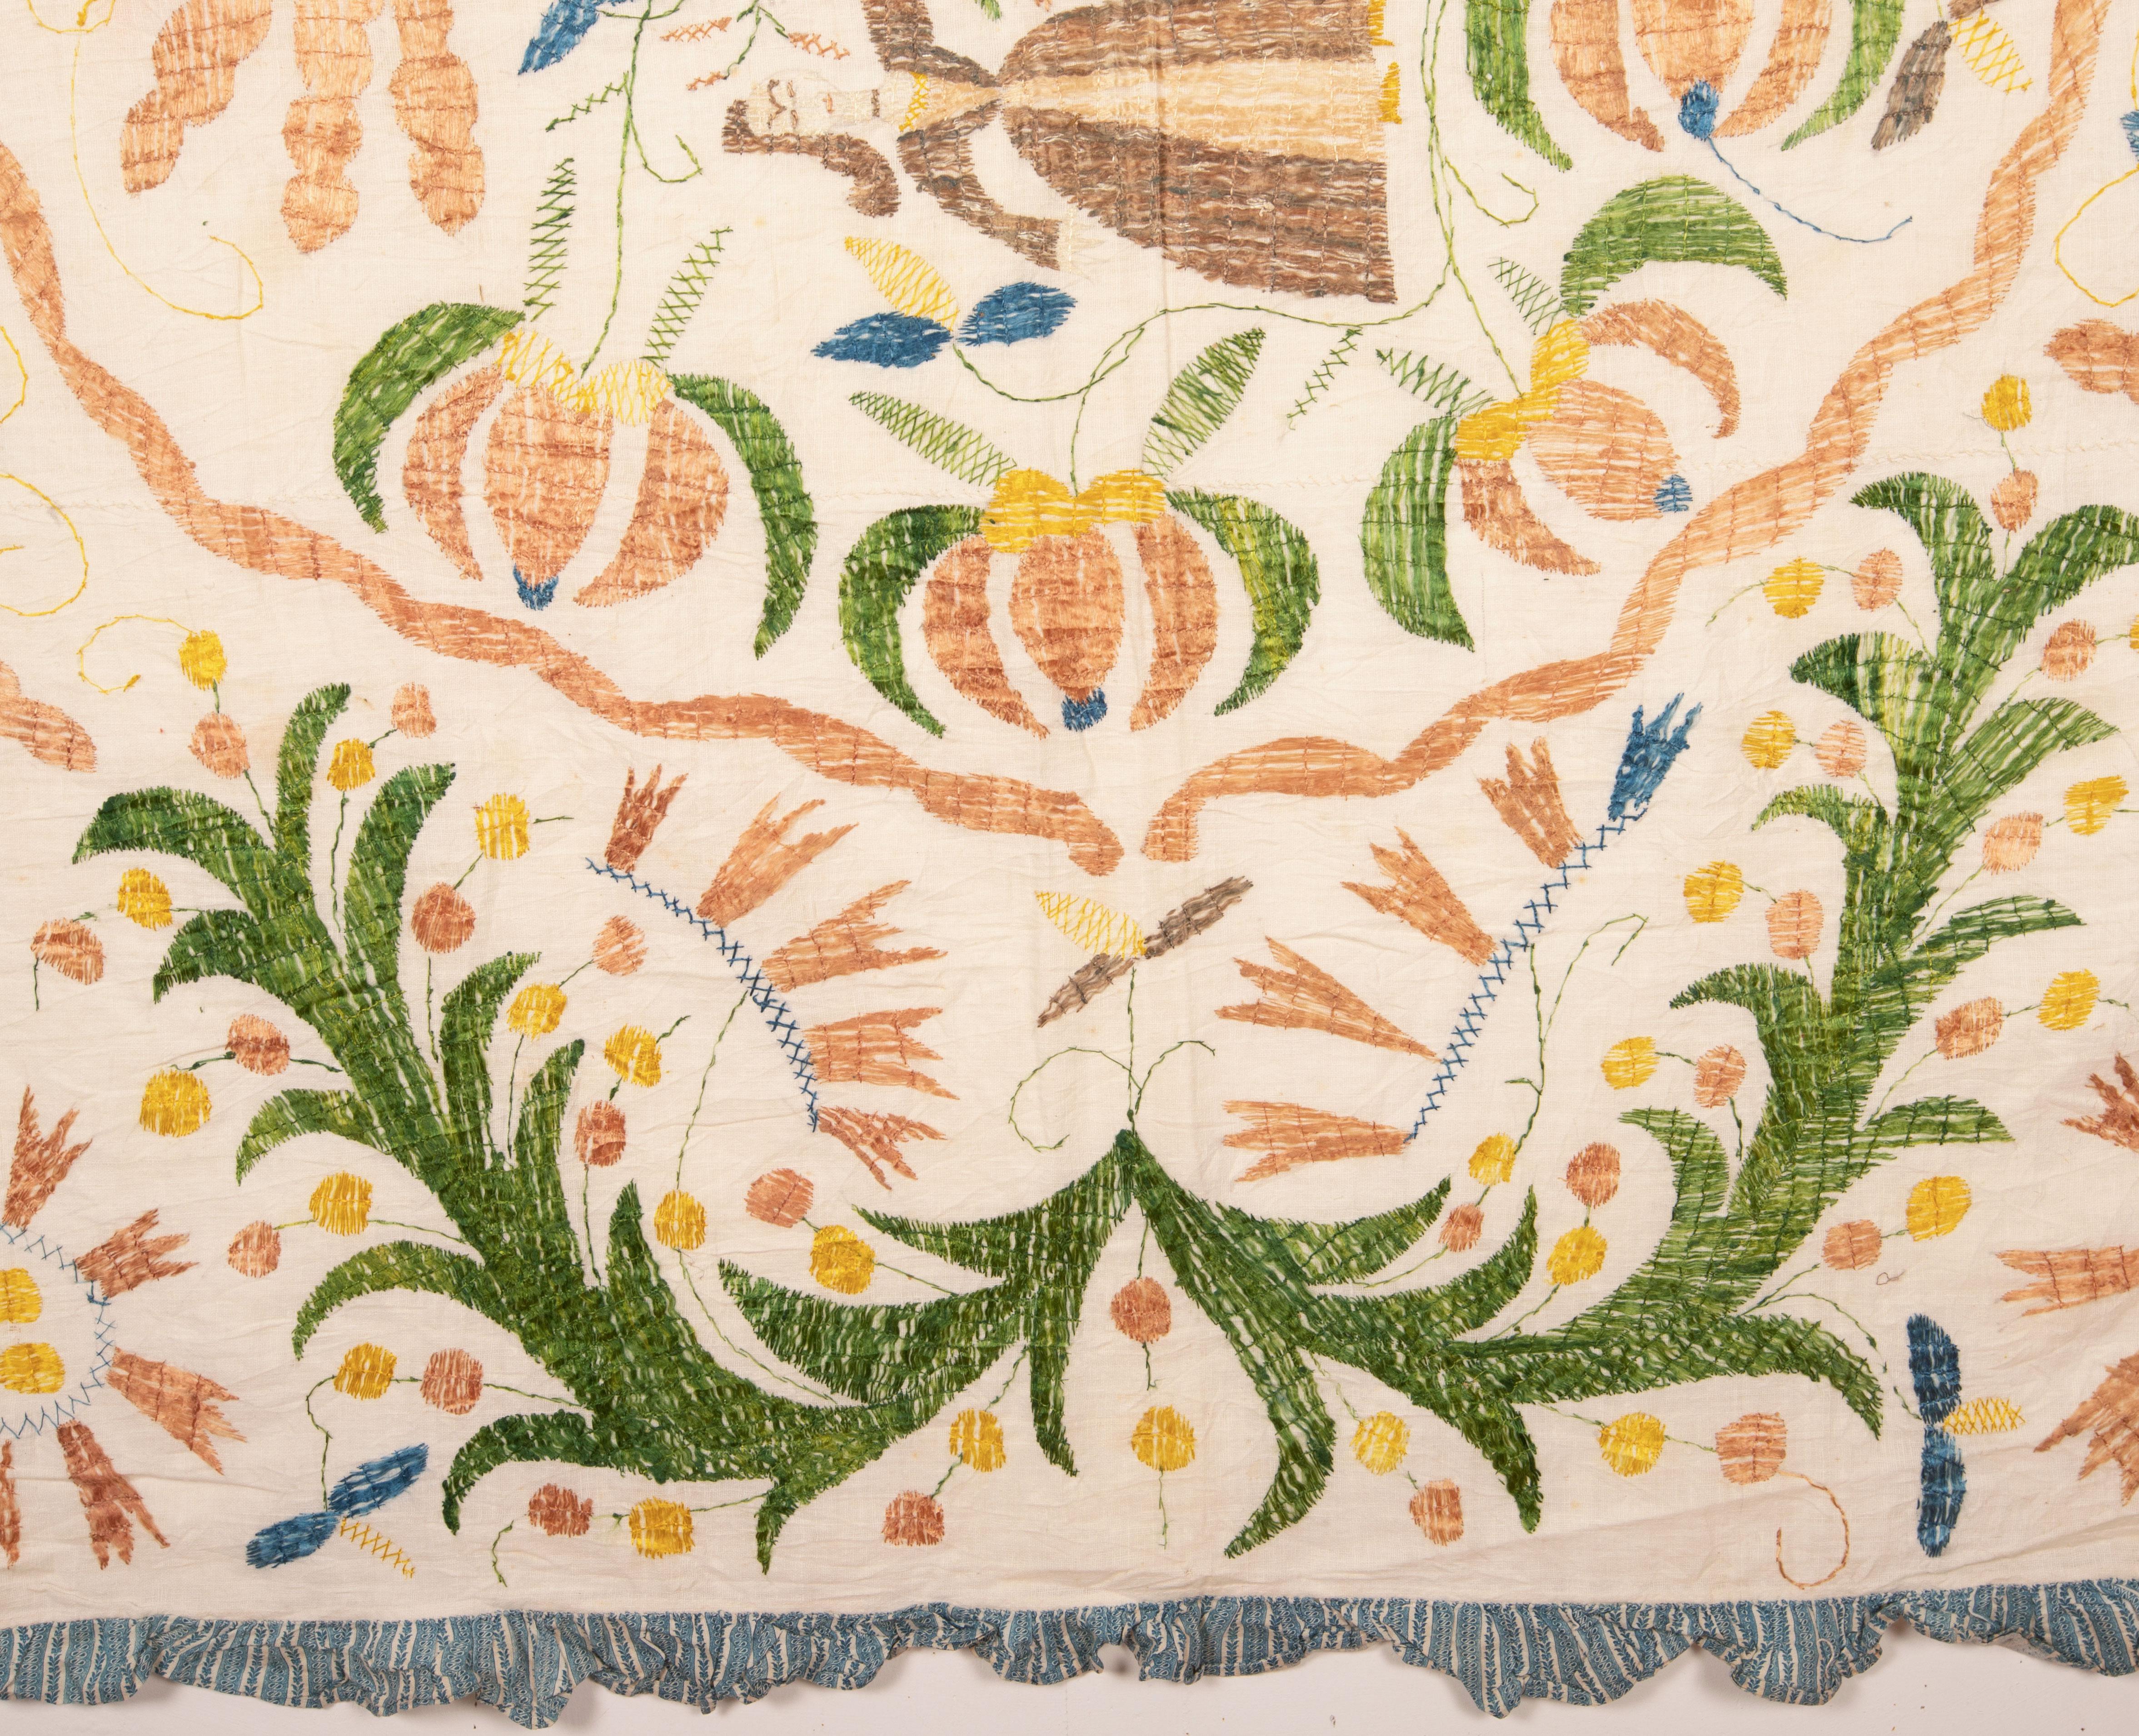 Portuguese Pictorial Castelo Branco Embroidery, Portugal, 19th C